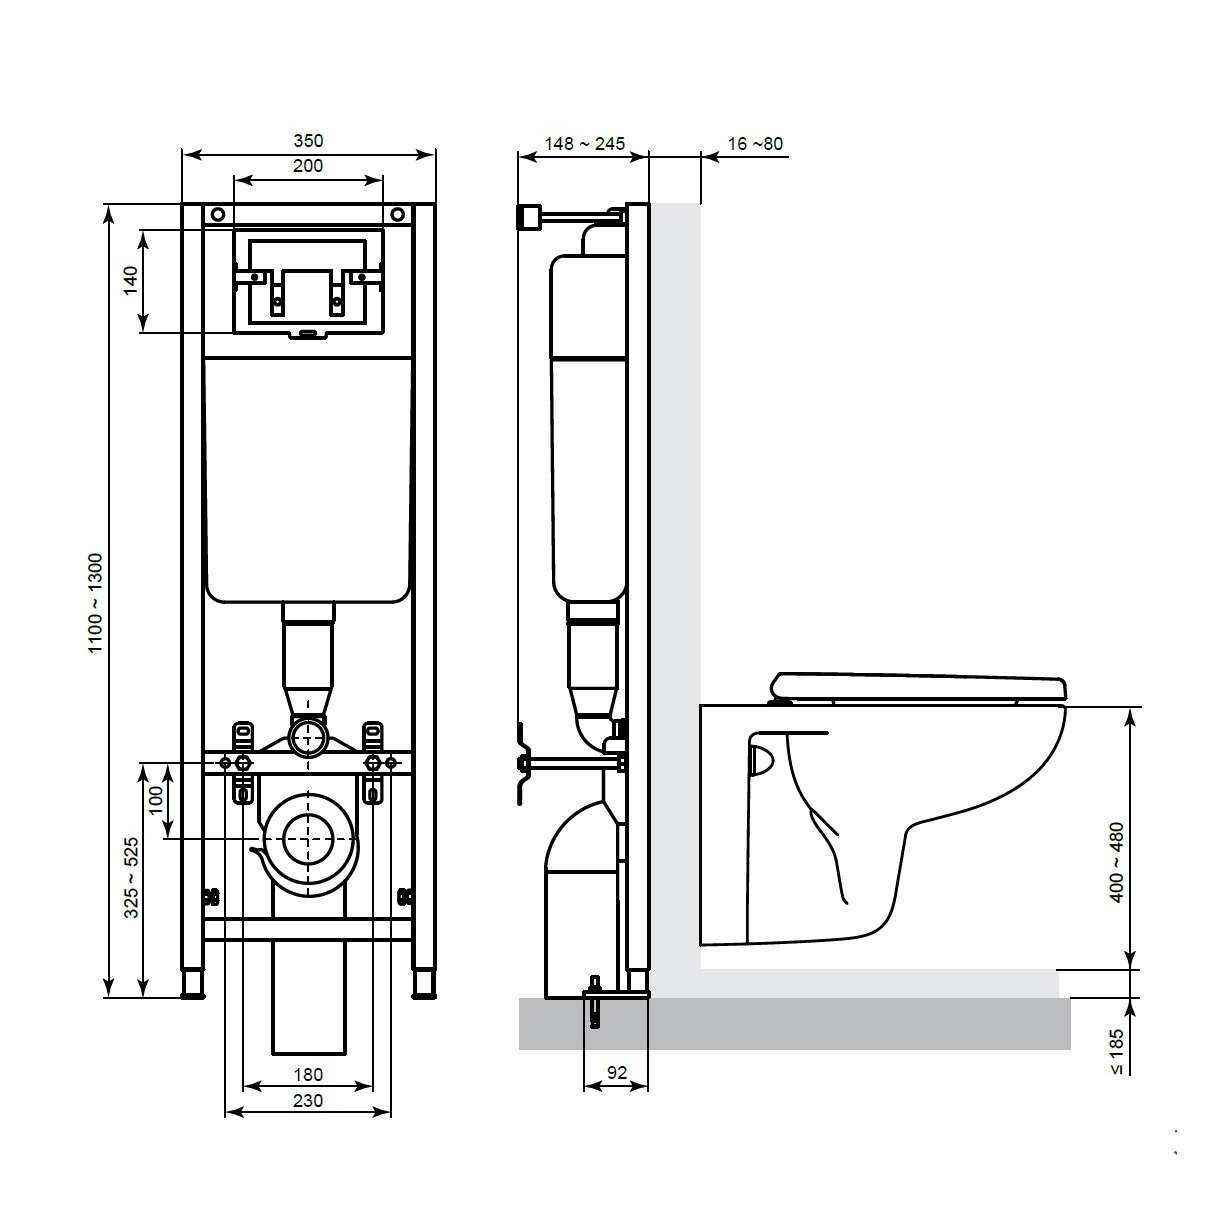 Эргономика ванной комнаты: удобное расстояние от унитаза до стены, высота установки ванны и раковины